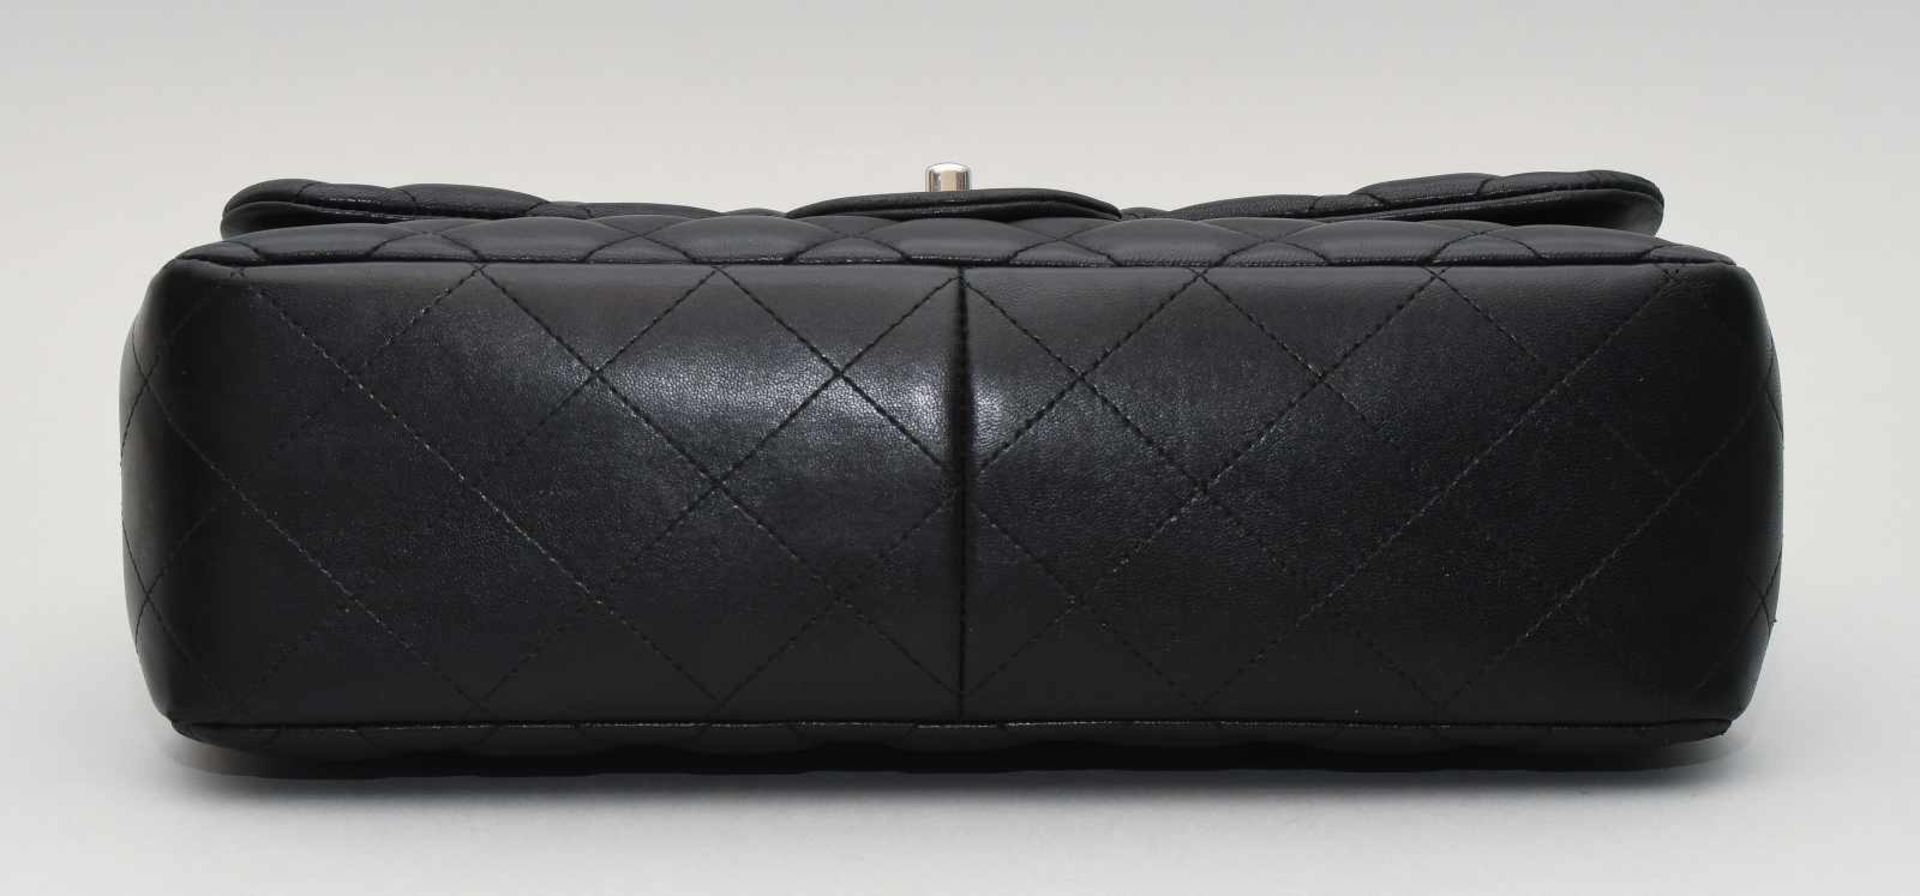 Chanel, Handtasche "Timeless" Jumbo Aus schwarzem Leder mit gestepptem Rautenmuster. - Bild 12 aus 13